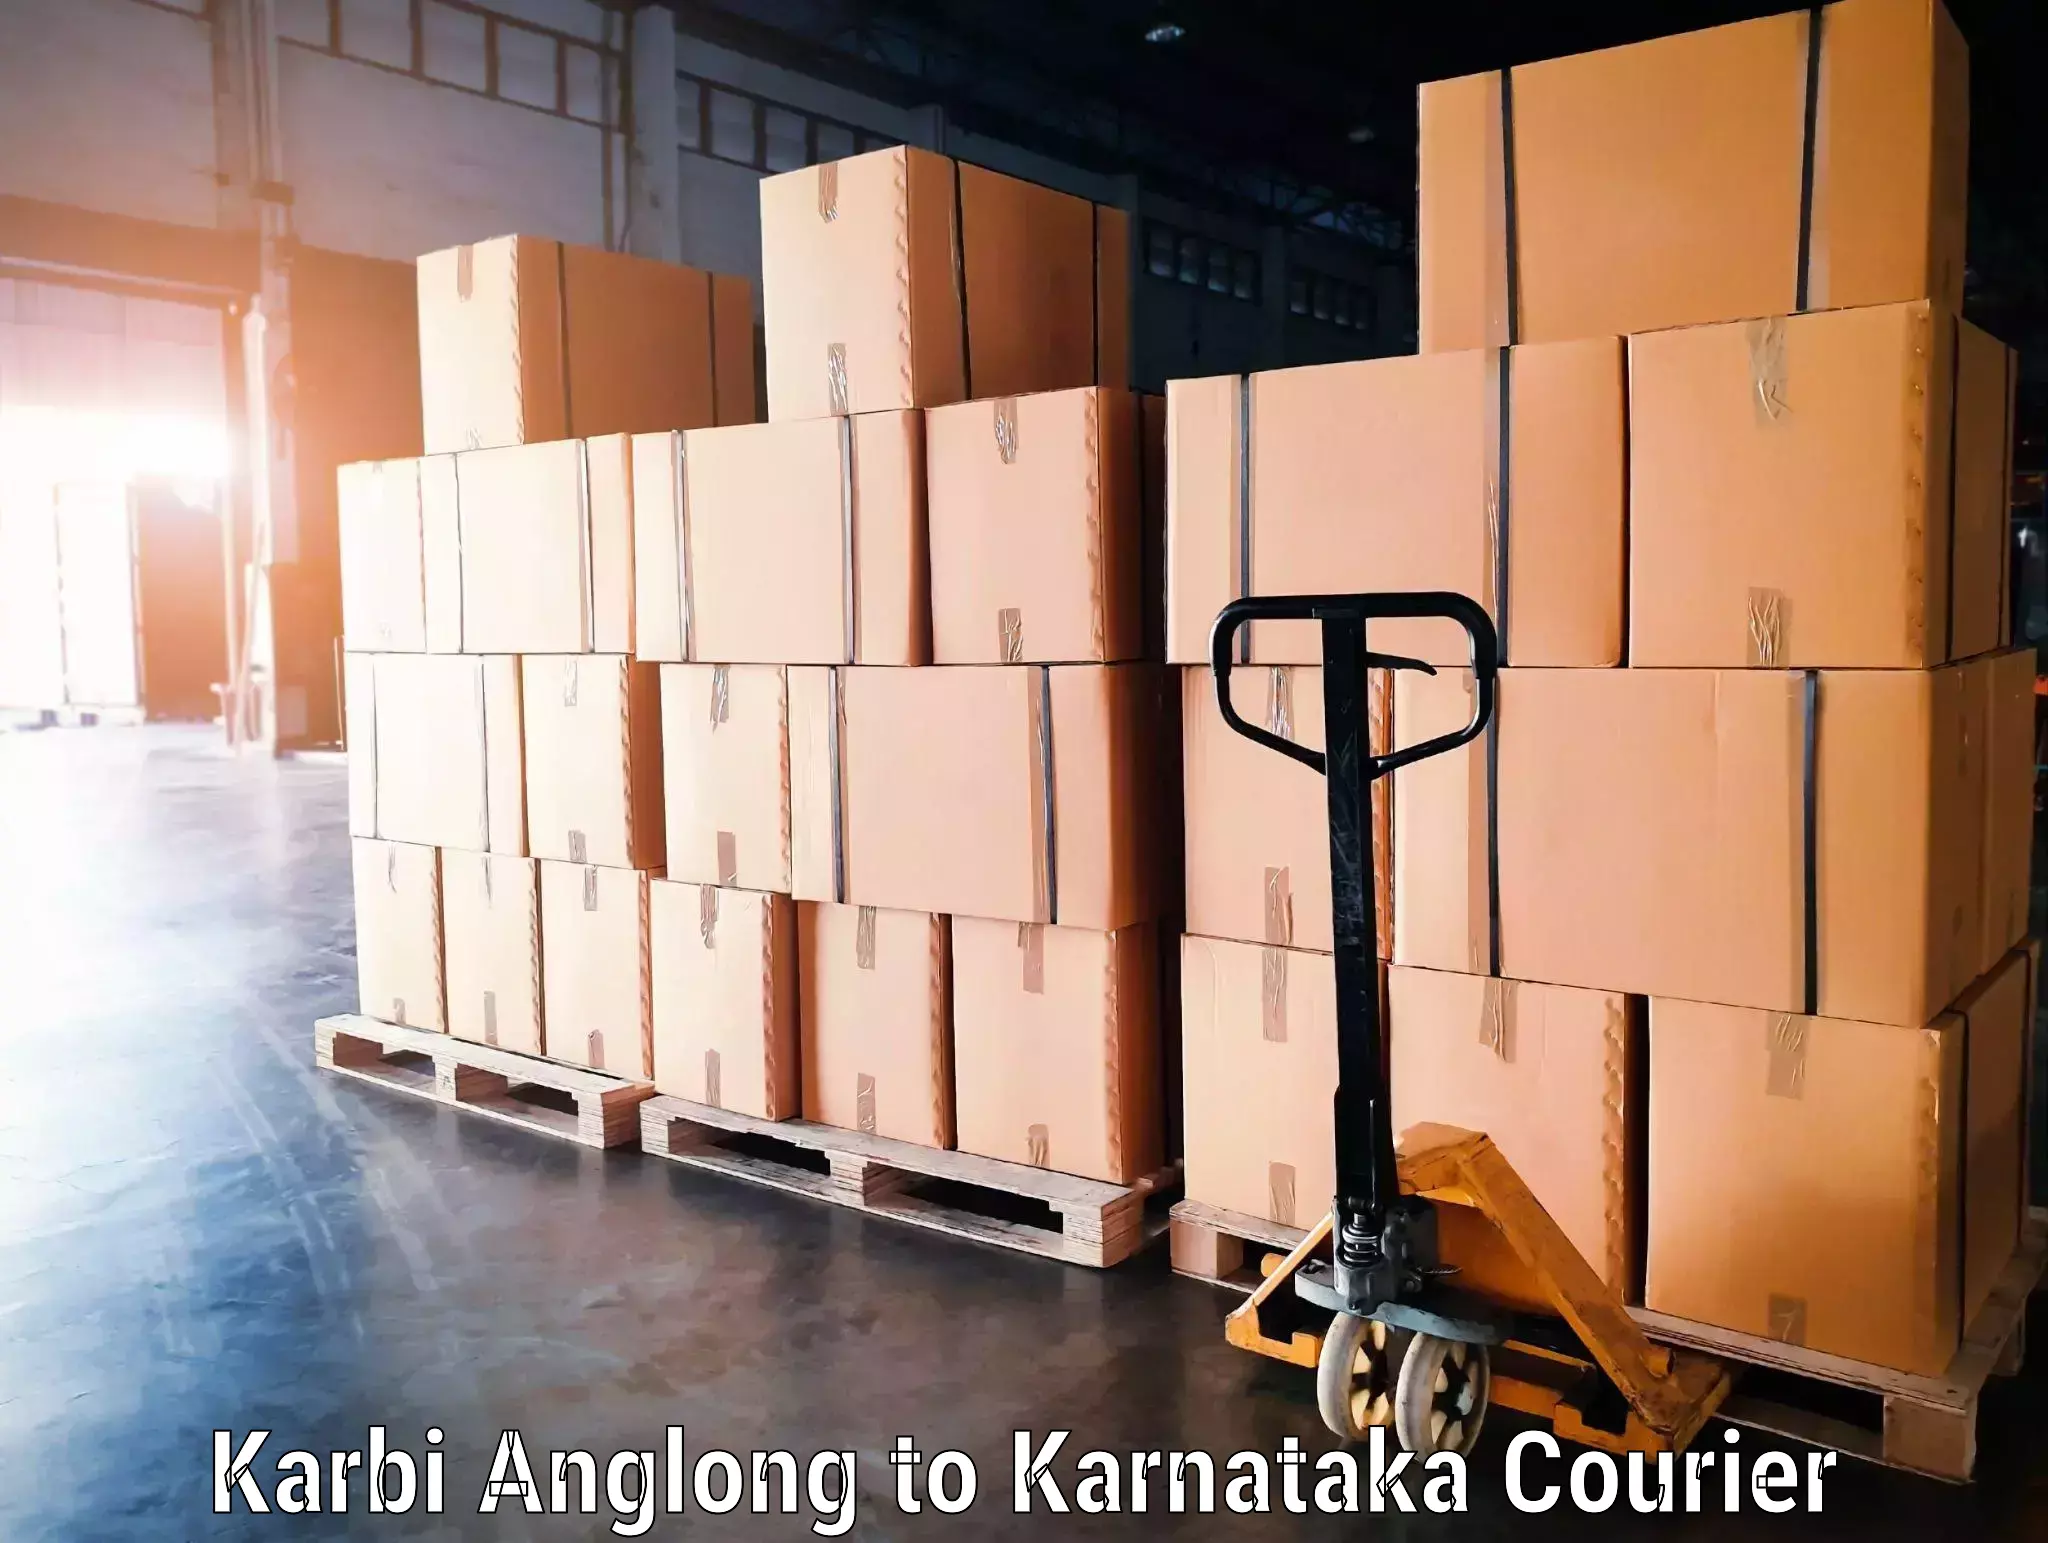 Baggage transport professionals Karbi Anglong to Yaragatti